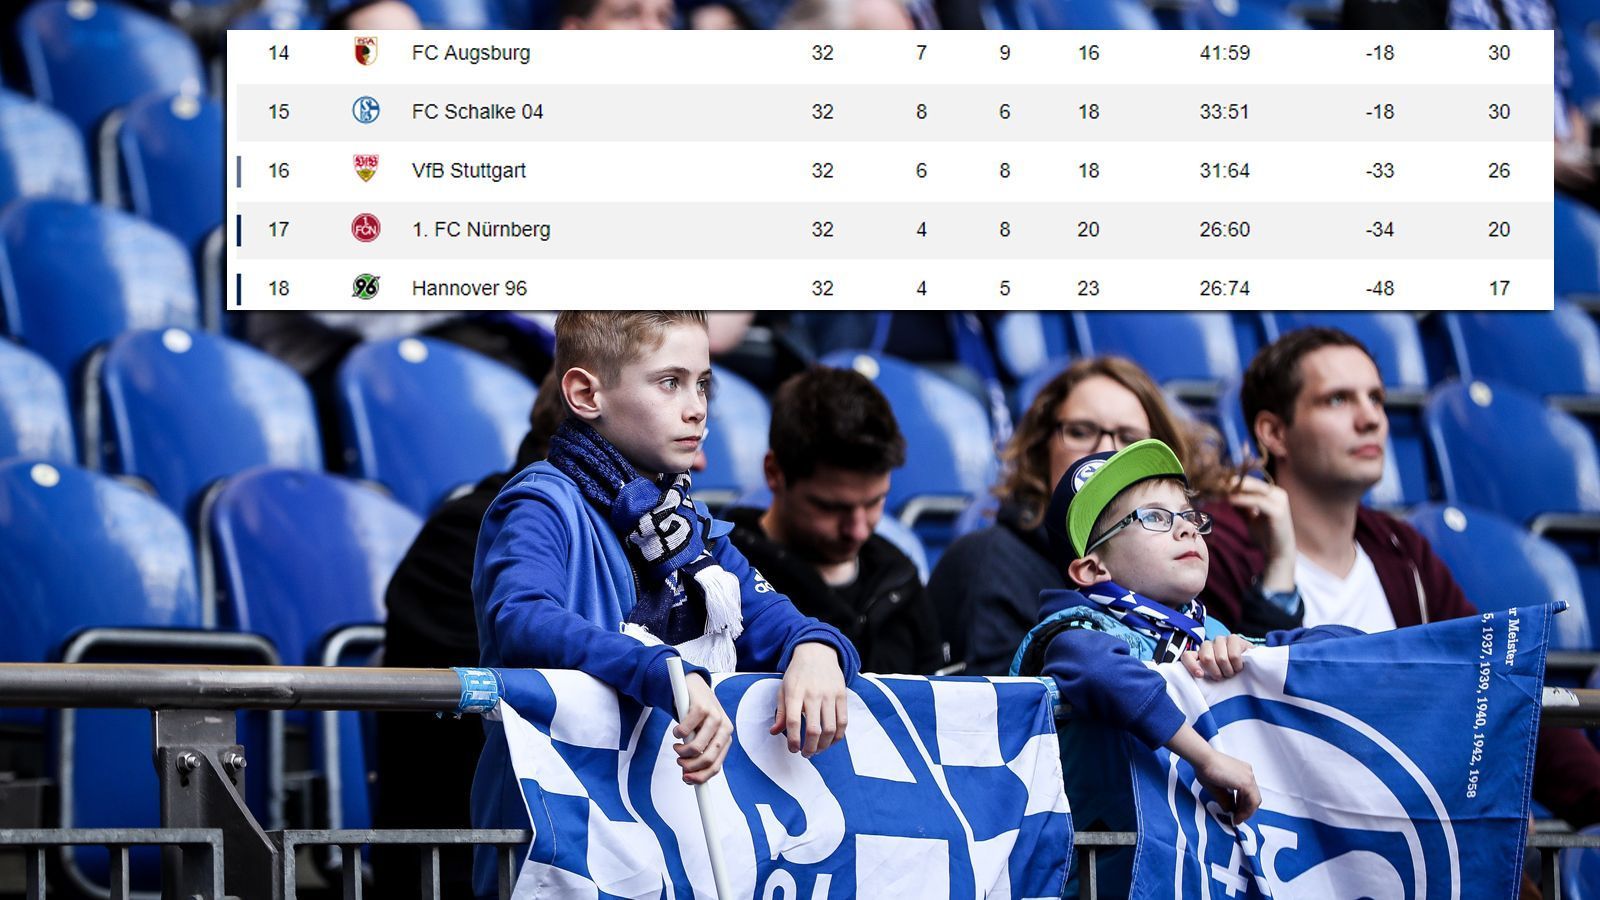 
                <strong>32. Spieltag: Vorentscheidung im Kellerduell verpasst</strong><br>
                Erster Matchball vergeben! Im Heimspiel gegen den FC Augsburg hätte Schalke den Klassenerhalt so gut wie klarmachen können, weil Stuttgart bei Hertha BSC nicht über ein 1:1 hinaus kommt. Doch im Heimspiel gegen den FCA kommt das Team von Huub Stevens nicht über ein 1:1 hinaus. Die Enttäuschung ist groß, doch mit vier Punkten Vorsprung und der deutlich besseren Tordifferenz im Vergleich zu Stuttgart sieht es für Schalke immer noch gut aus.
              